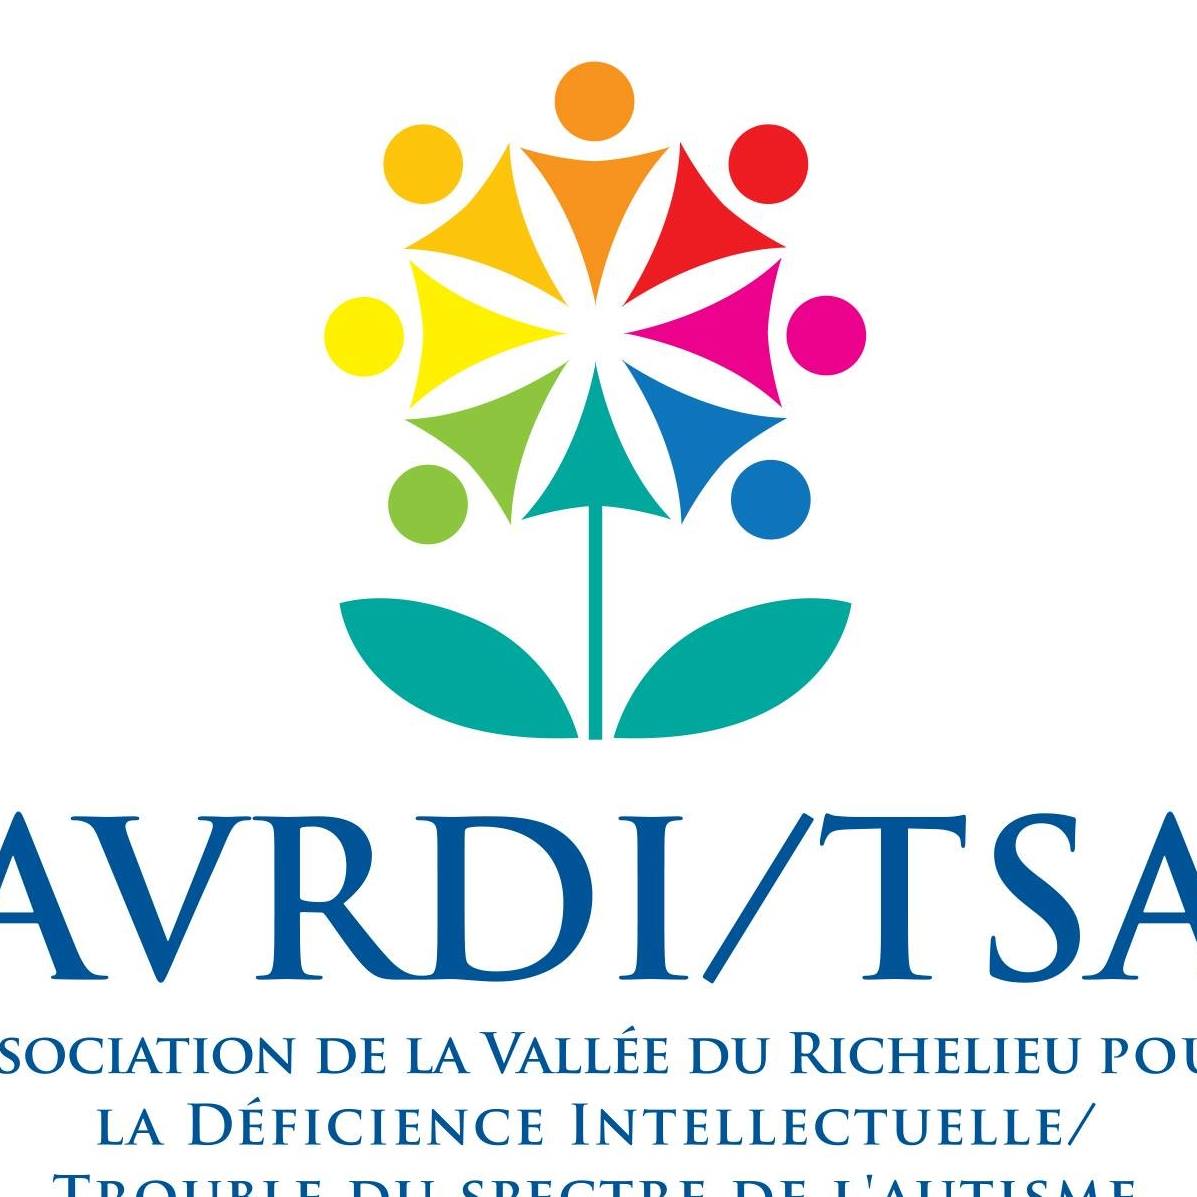 Association de la Vallée-du-Richelieu pour la déficience intellectuelle et le trouble du spectre de l’autisme (AVRDI/TSA)